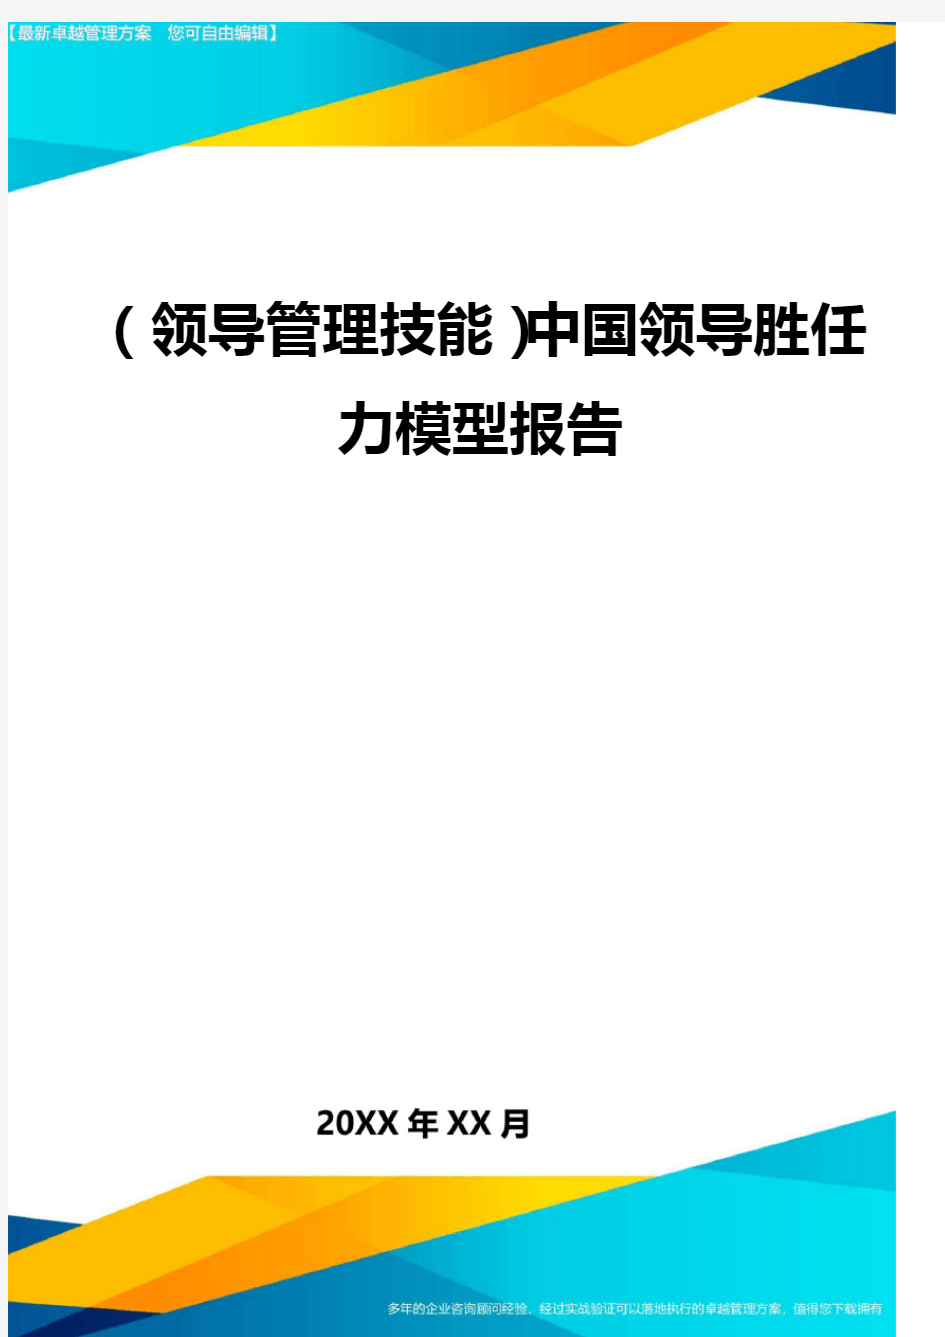 (领导管理技能)中国领导胜任力模型报告最全版